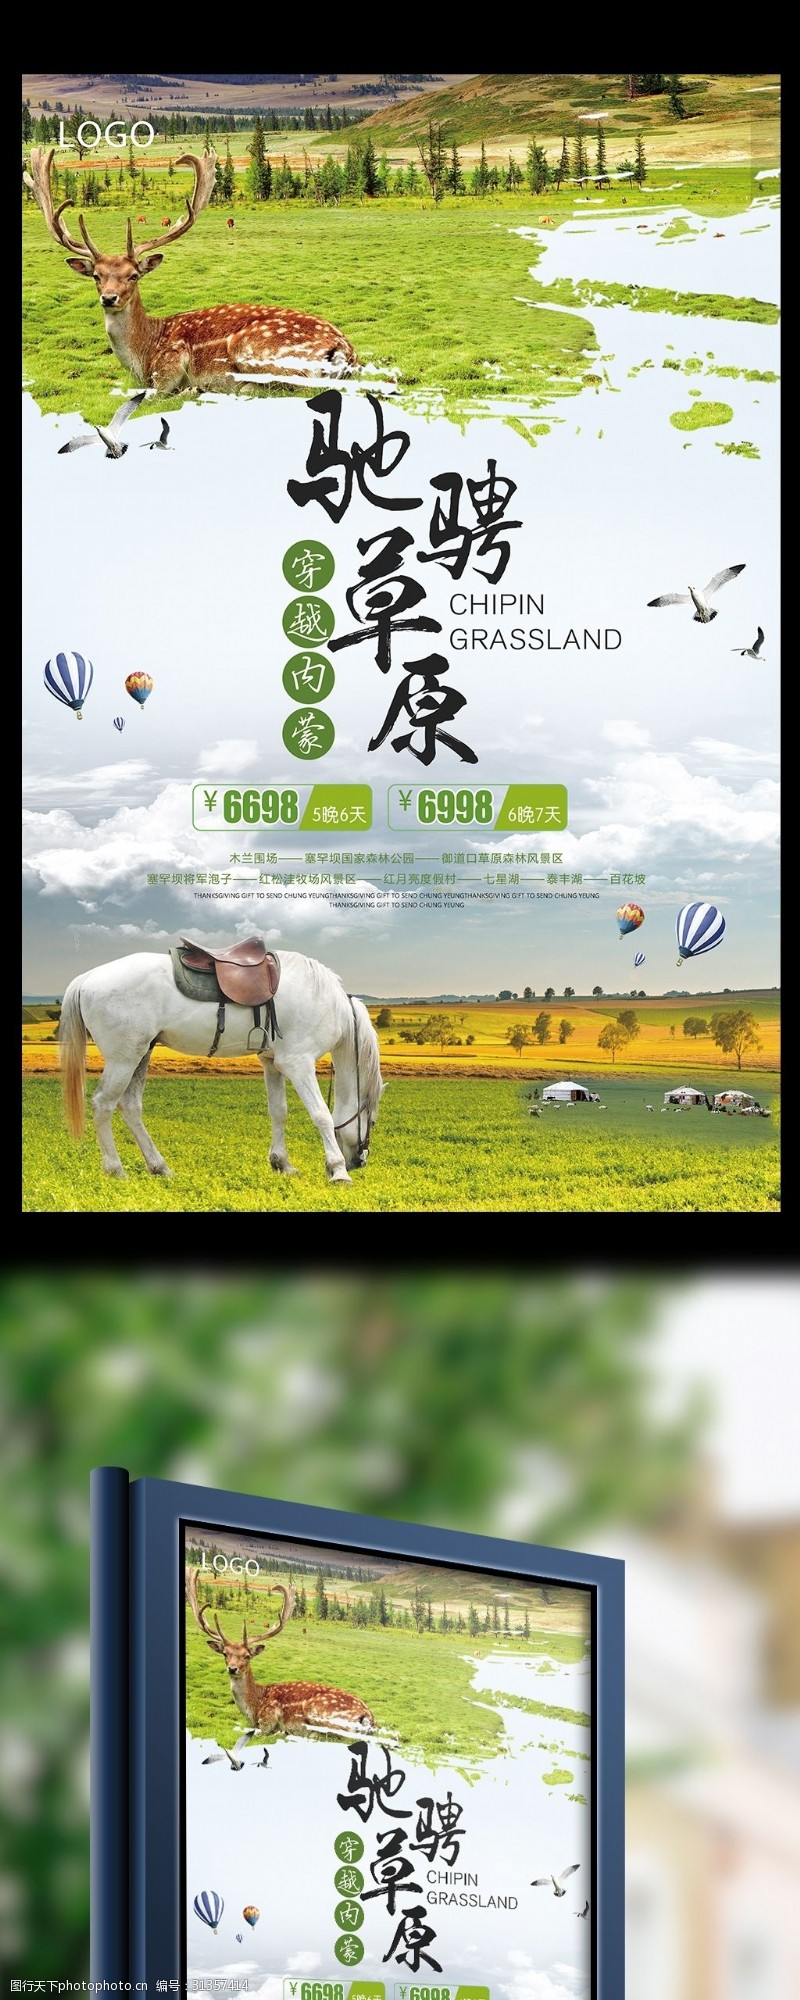 高原草原简洁大气创意驰骋草原旅游宣传海报